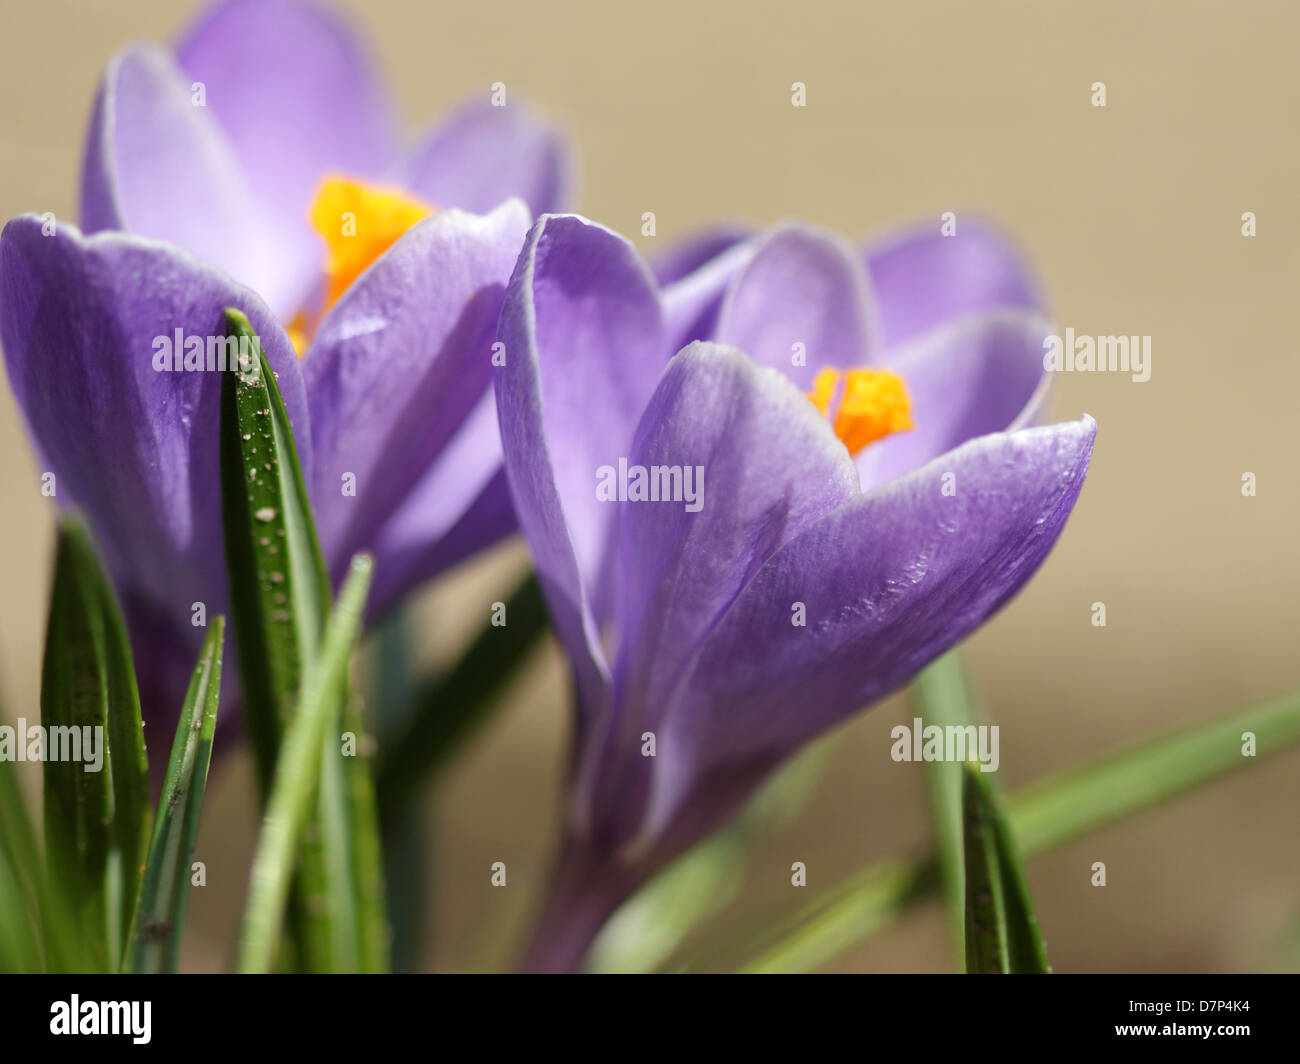 Closeup of violet crocus in a garden. Spring. Stock Photo